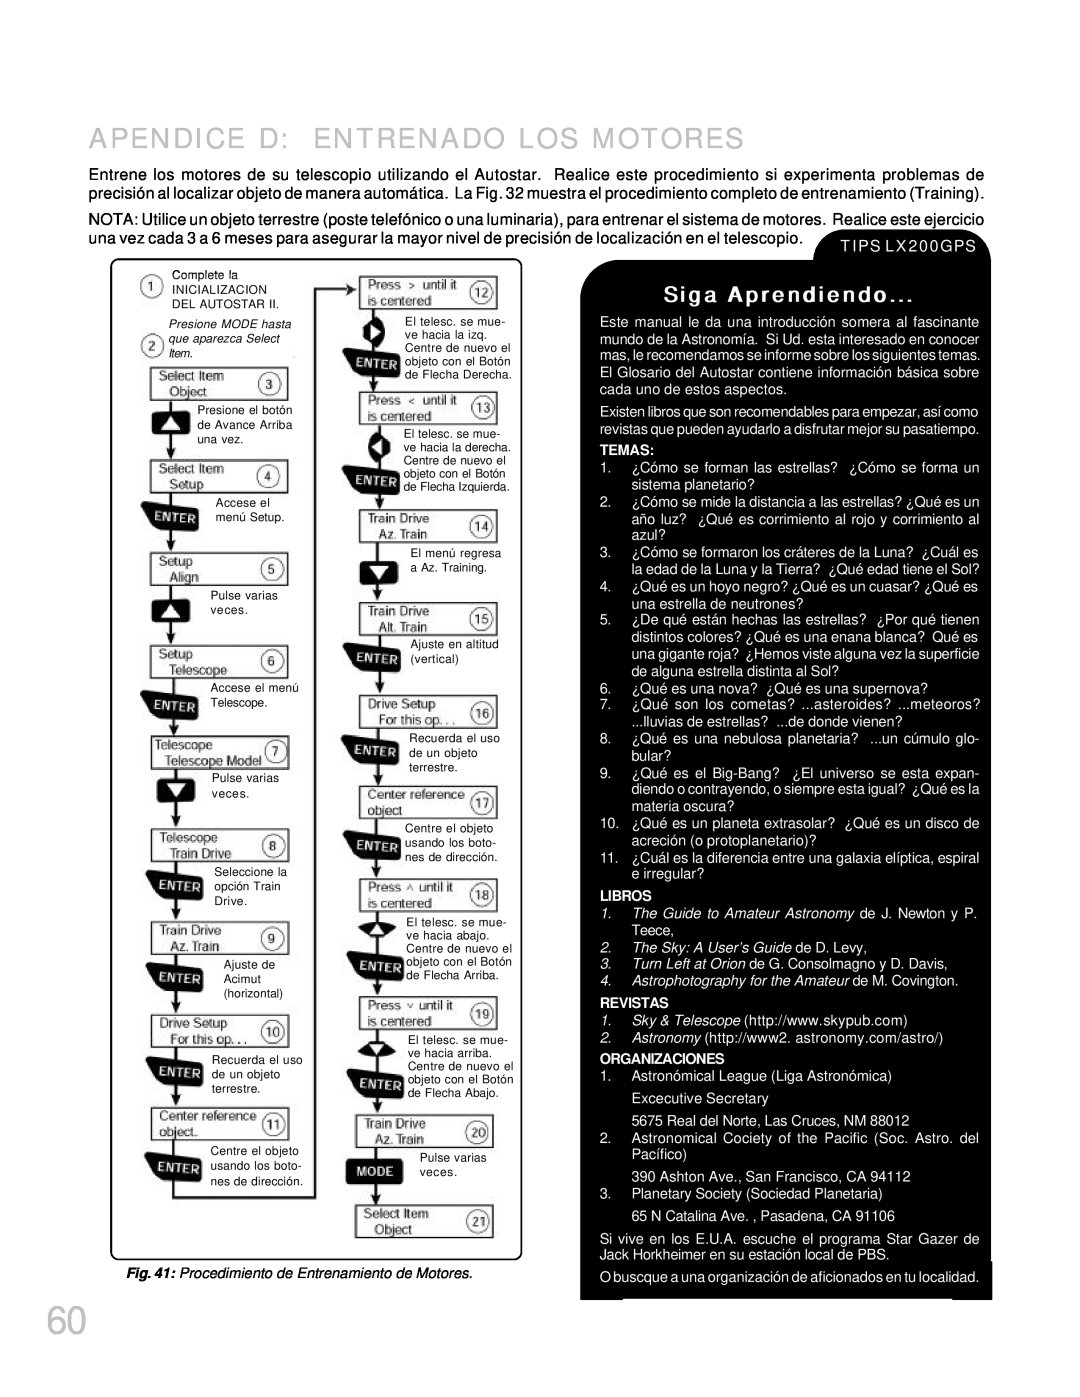 Meade LX200GPS manual Apendice D Entrenado Los Motores, Siga Aprendiendo, Temas, Libros, The Sky A User’s Guide de D. Levy 